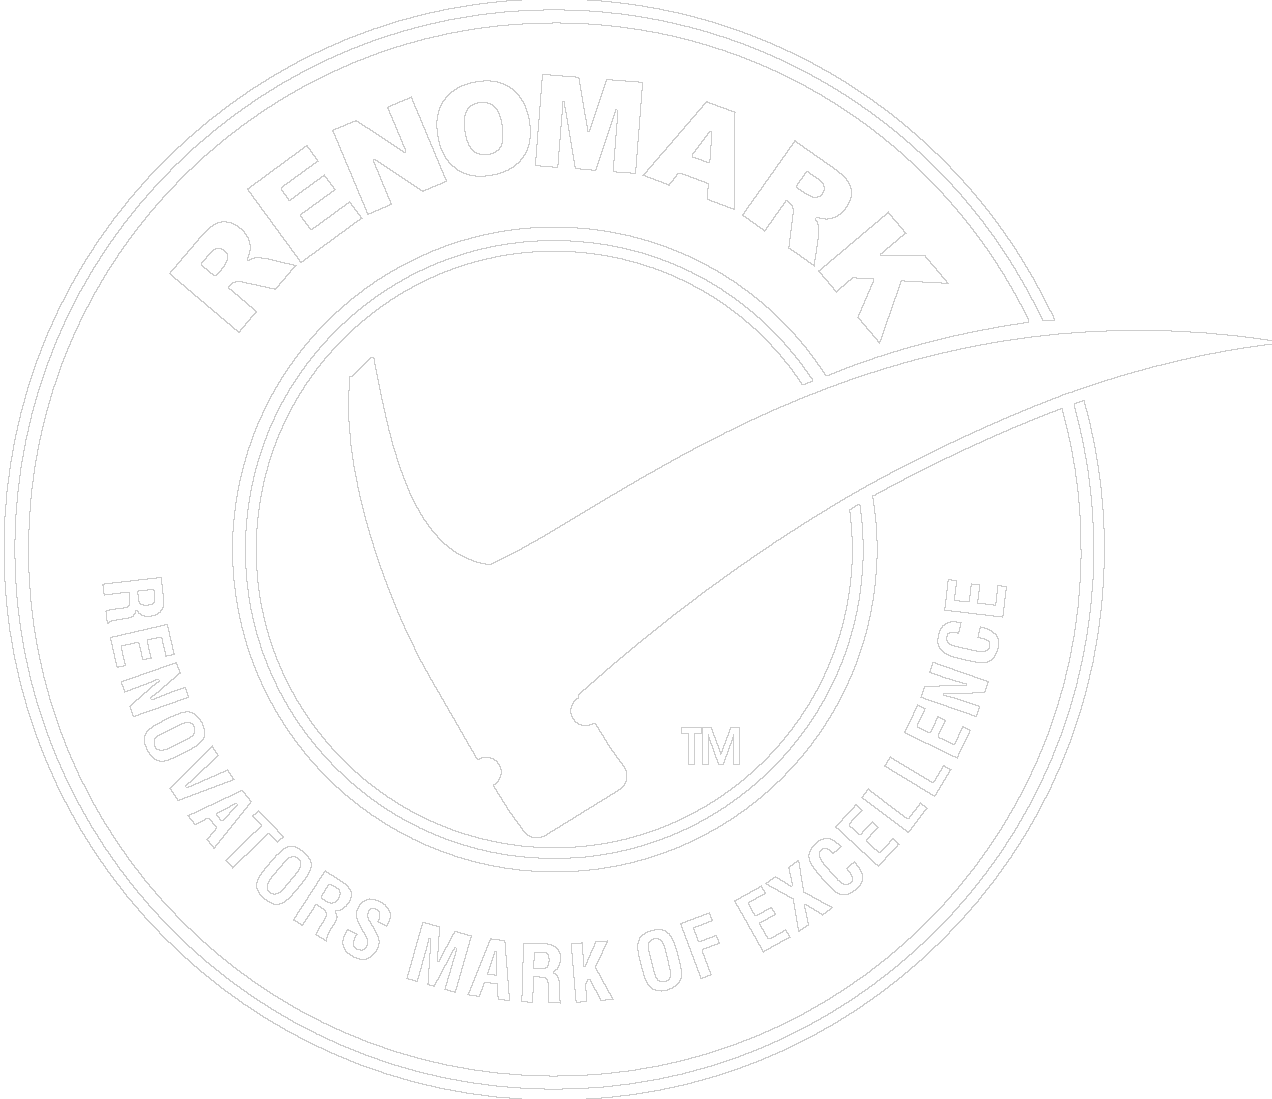 Renomark Stamp